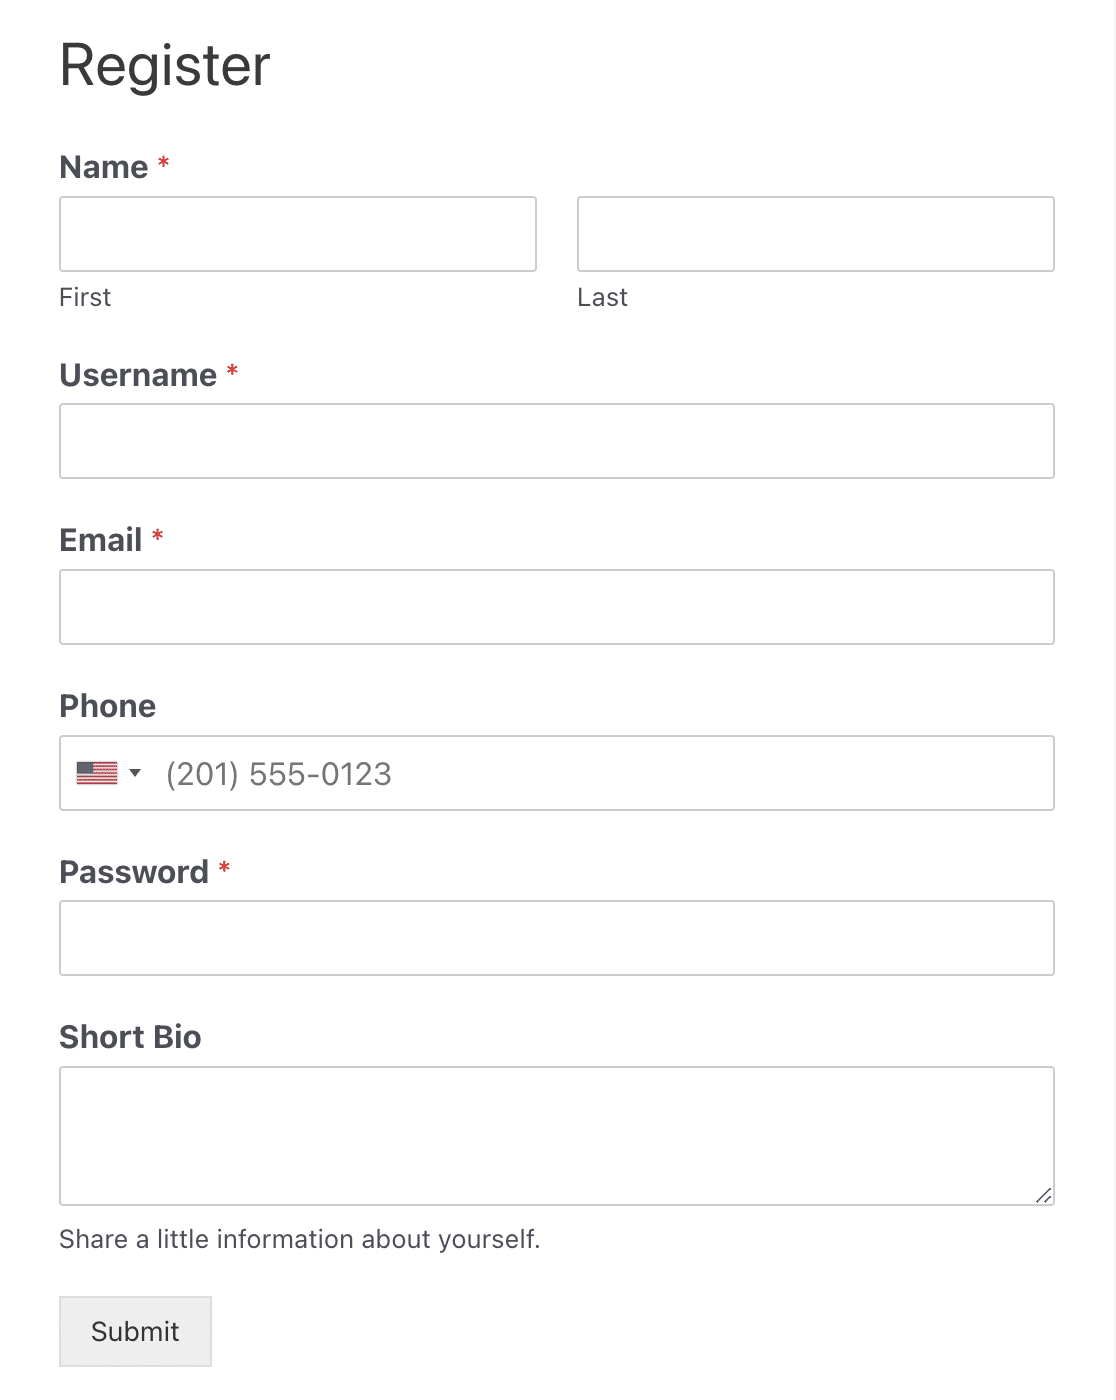 A user registration form